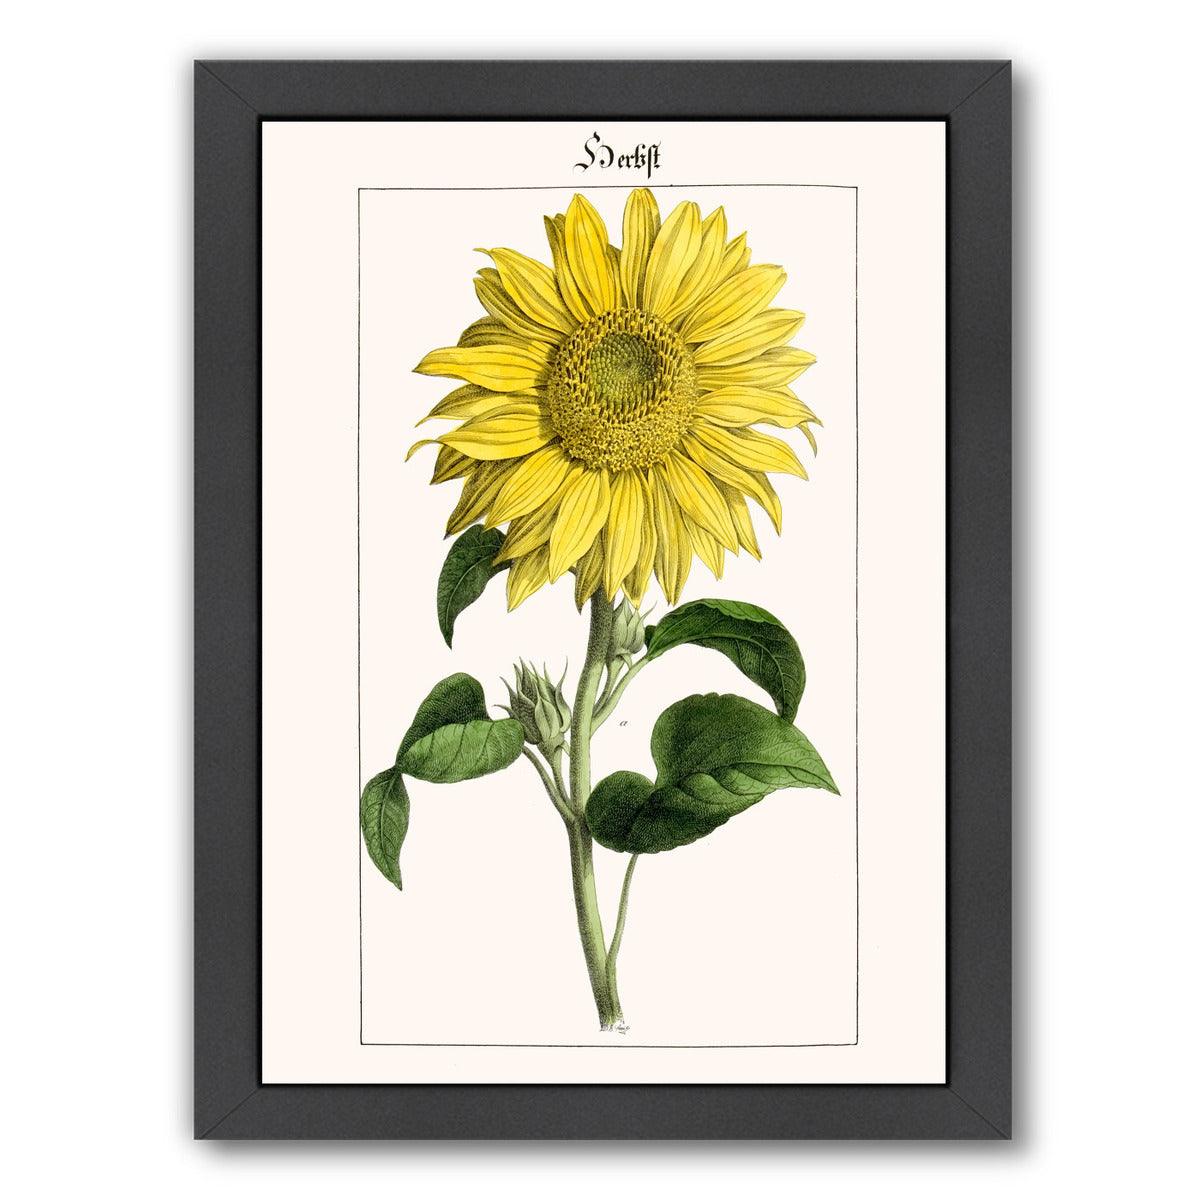 Sonnenblume by New York Botanical Garden Framed Print - Americanflat